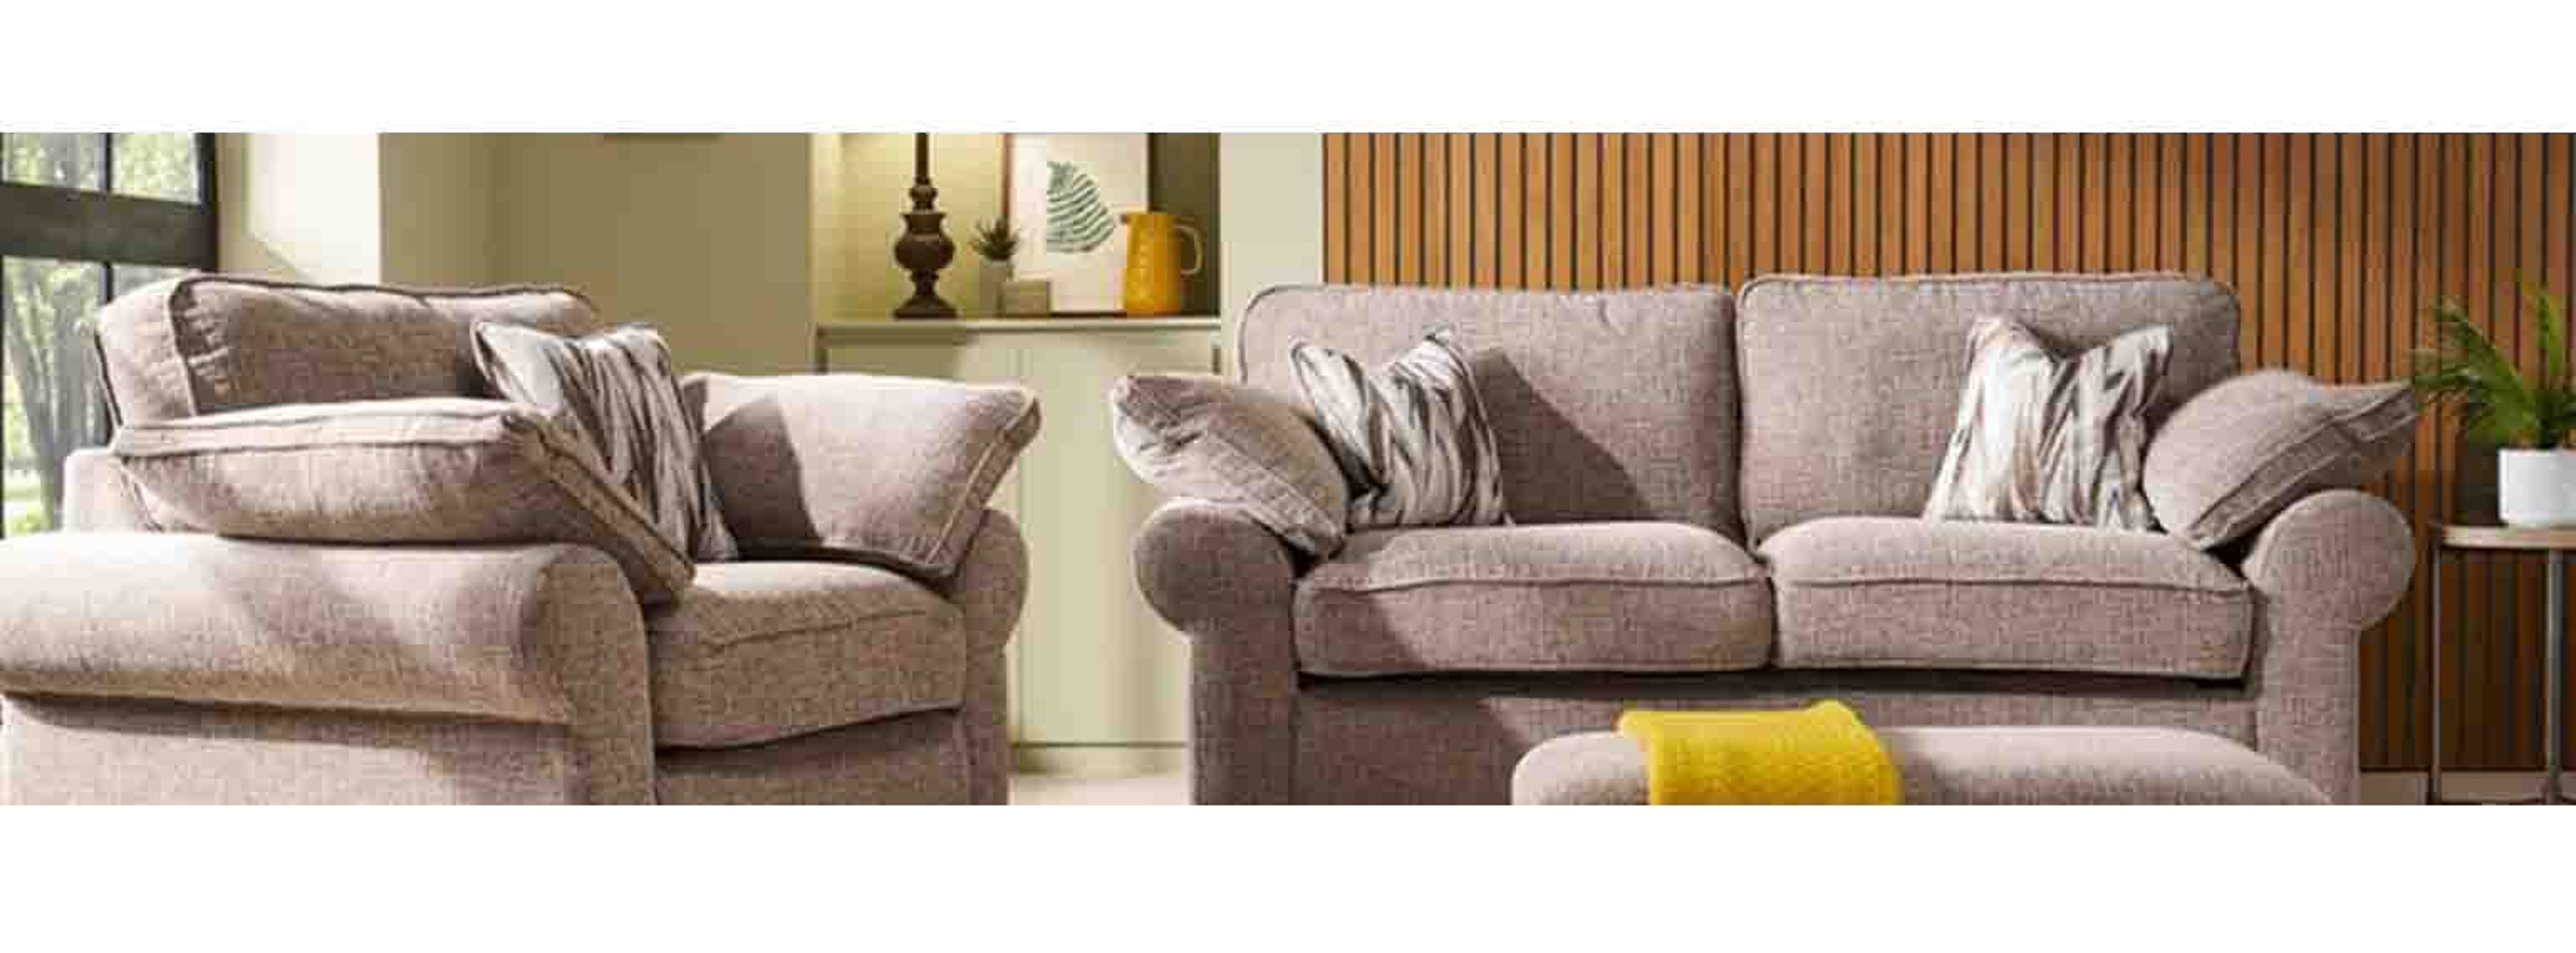  scs furniture sofa 